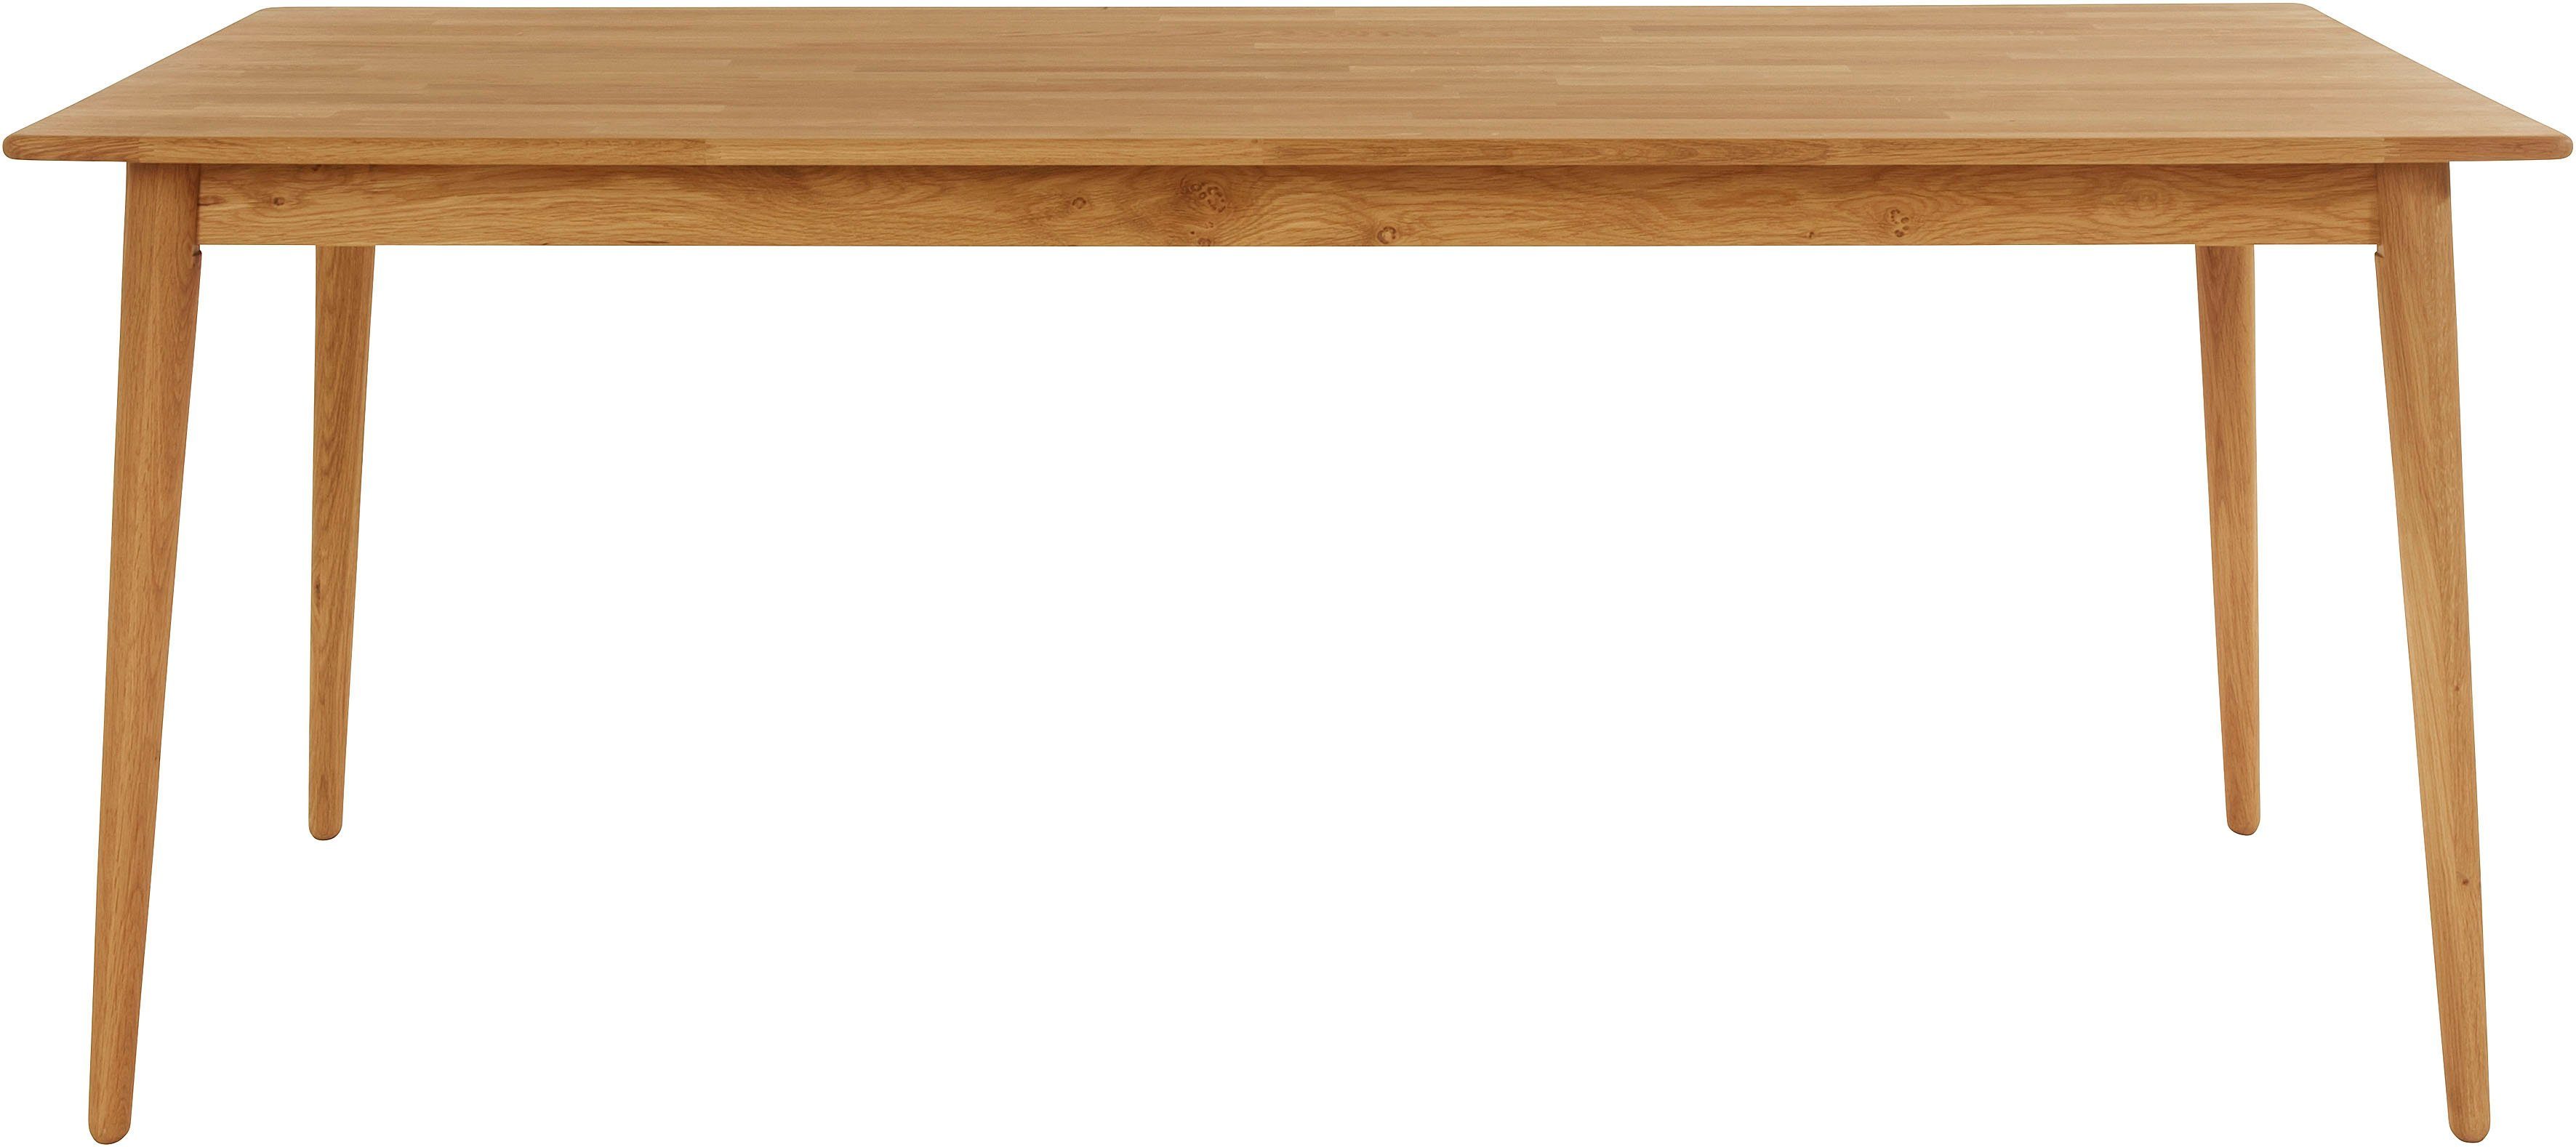 andas Esstisch Toarp, Massivholz Eiche Esszimmertisch im Scandi Look, FSC  zertifiziert, Verlängerbar durch separat bestellbare Ansteckplatten